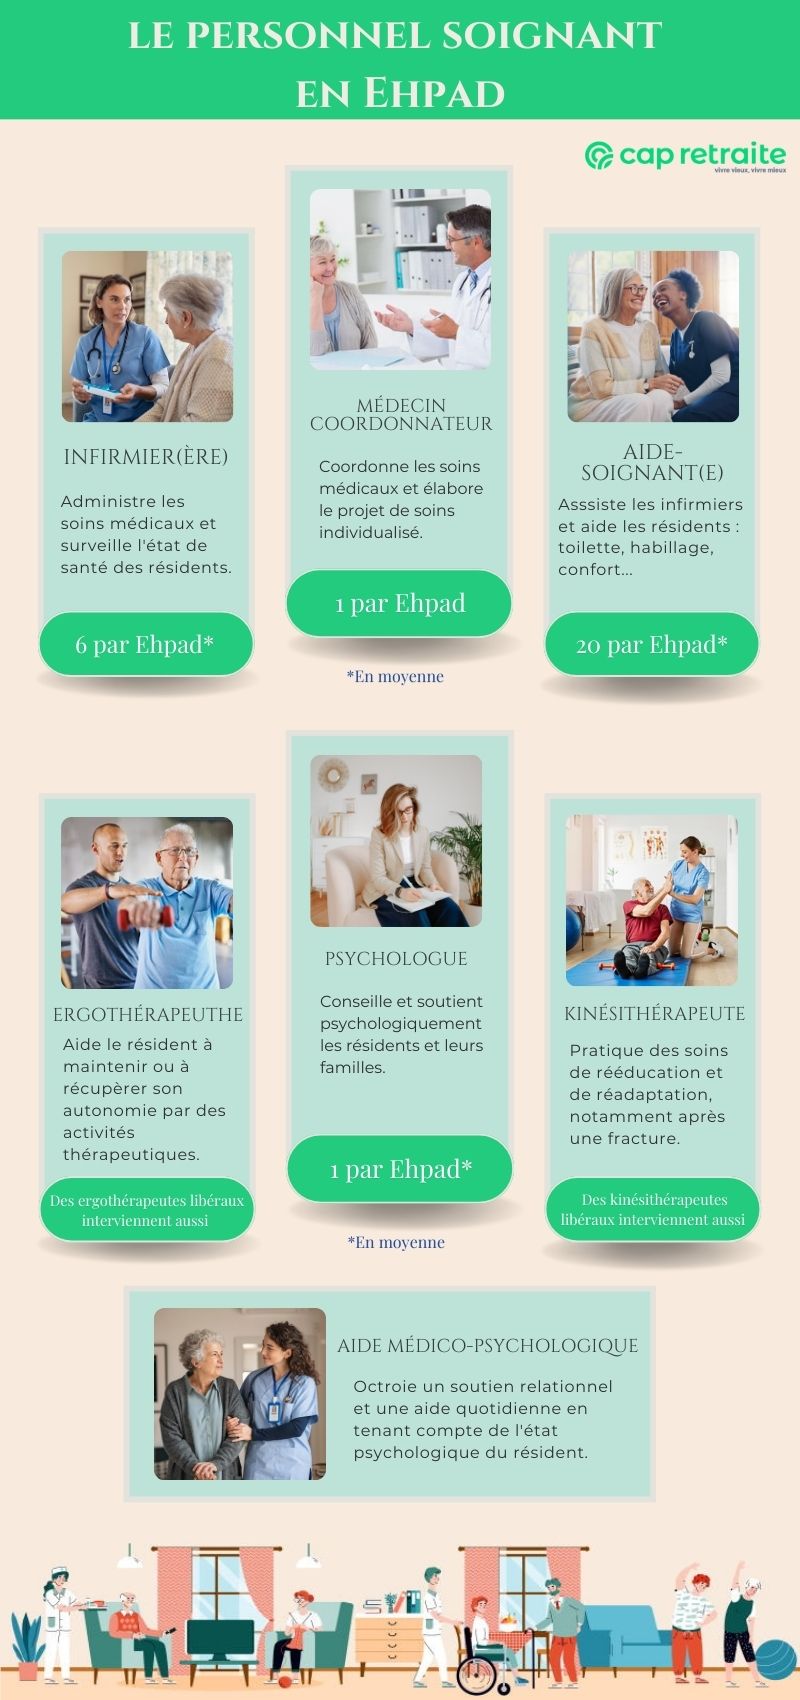 Infographie sur les rôles du personnel soignant en Ehpad : médecin coordonnateur, infirmière, aide-soignante, AMP, etc.